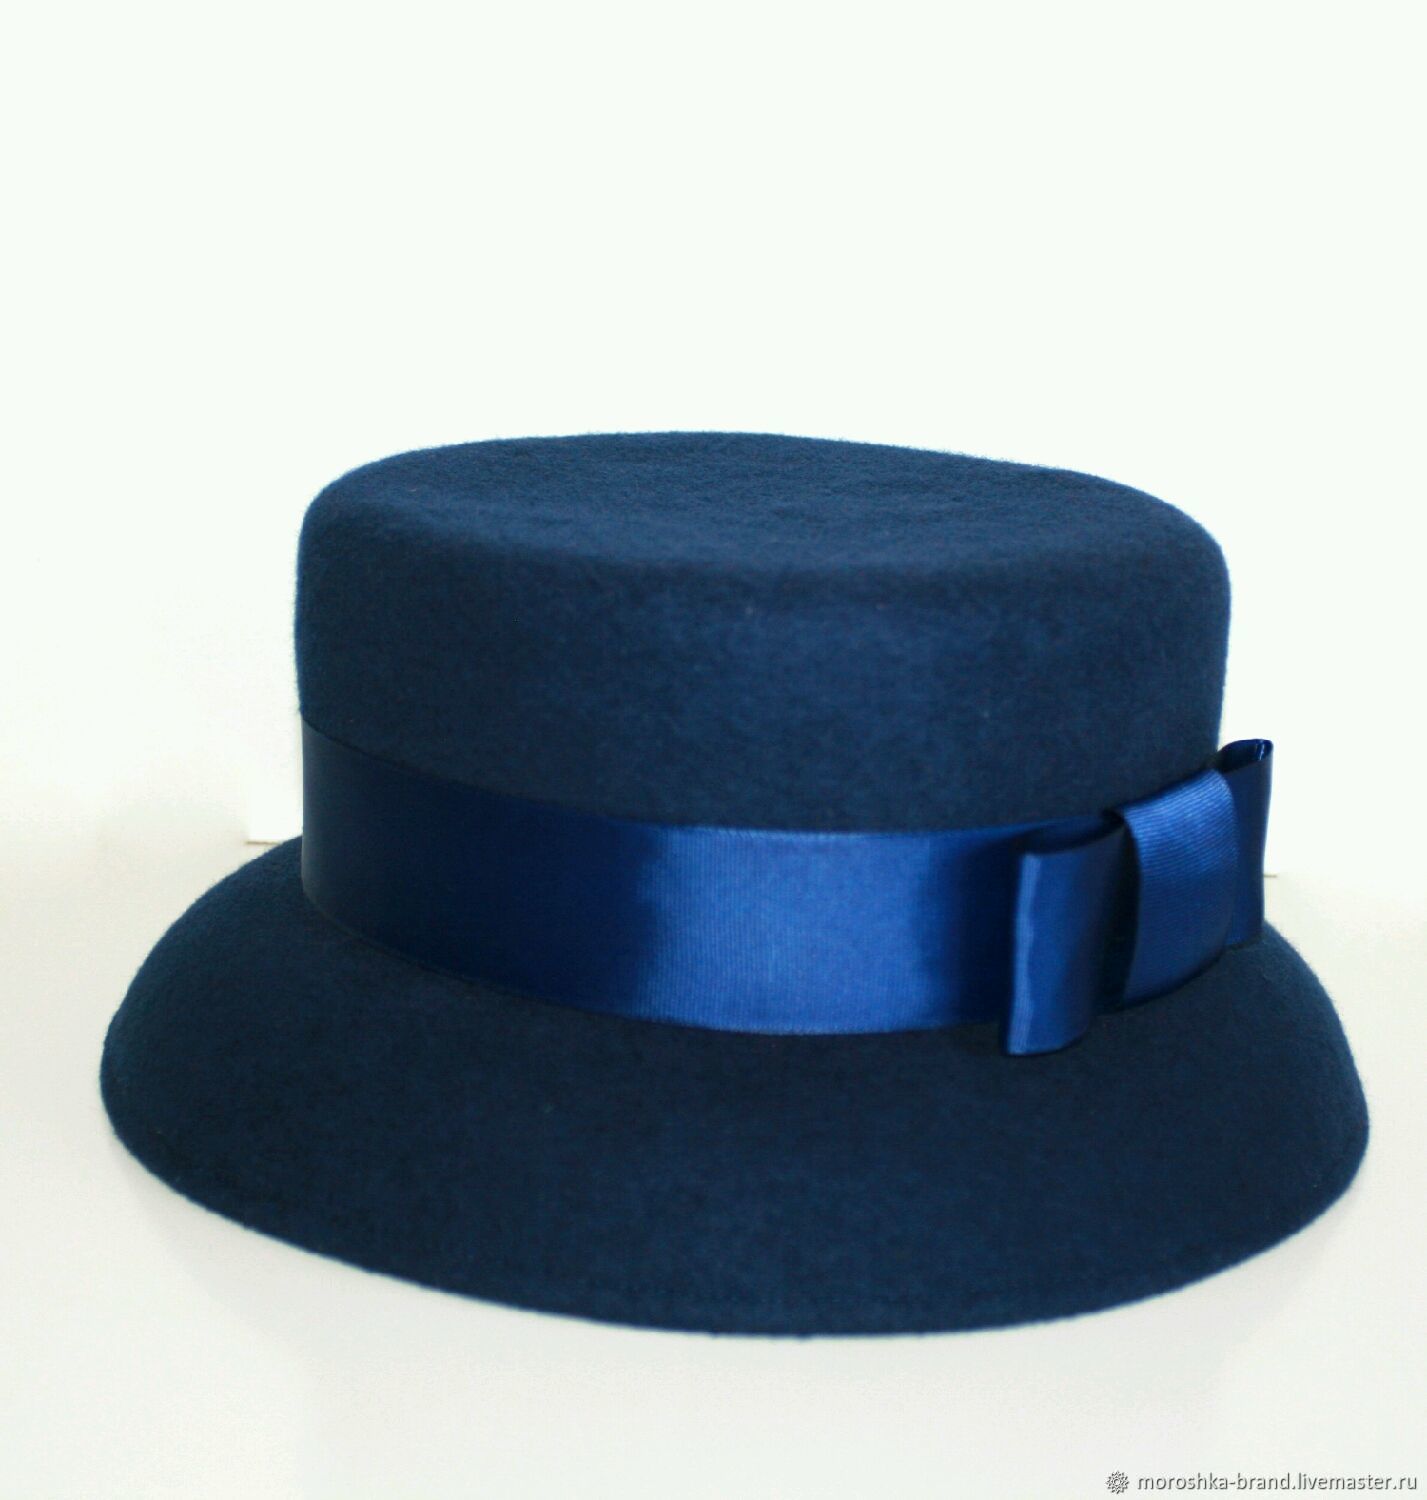 Шляпа синего цвета. Синяя шляпка. Шляпа колокол. Шляпка с синей лентой. Синяя шляпа женская.